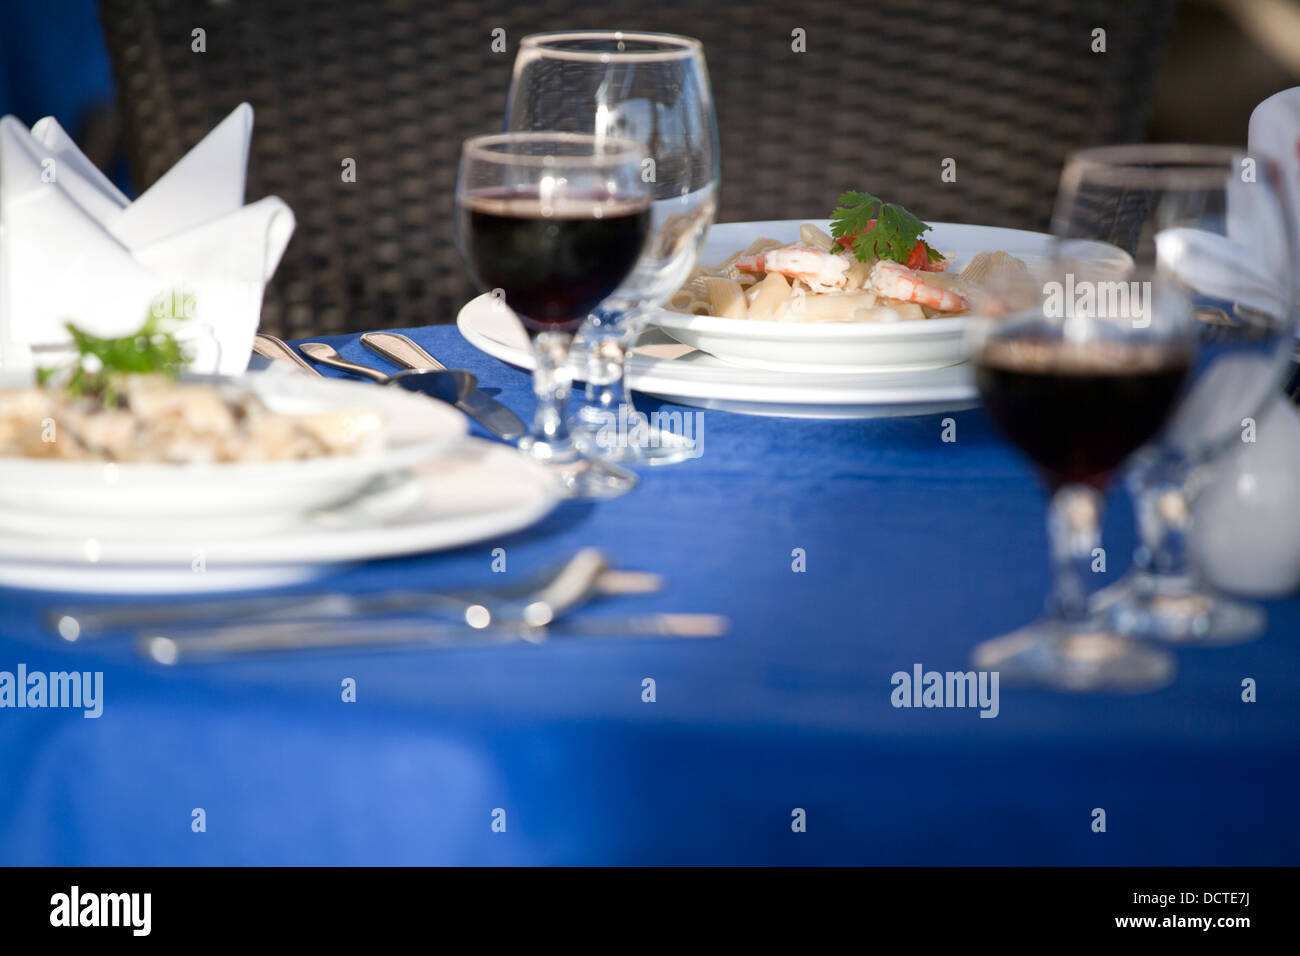 Estrema attenzione poco profonda immagine di un piatto di pasta su una tavola Foto Stock